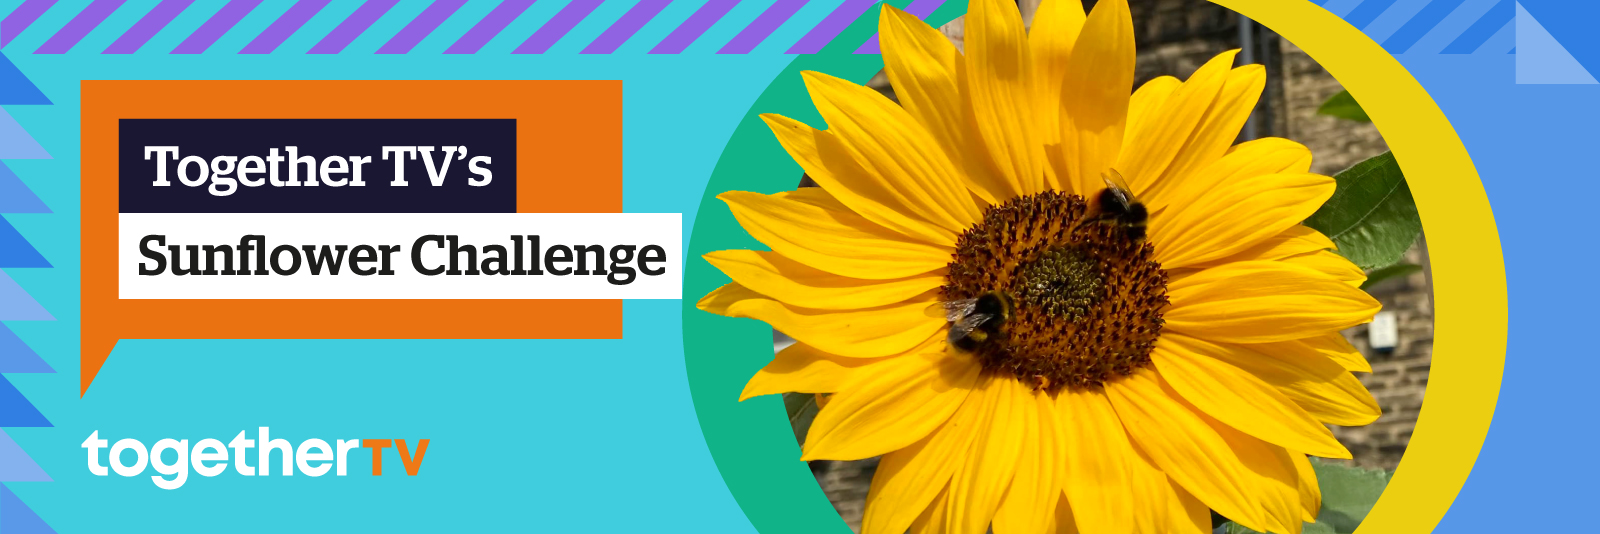 Sunflower Challenge header image